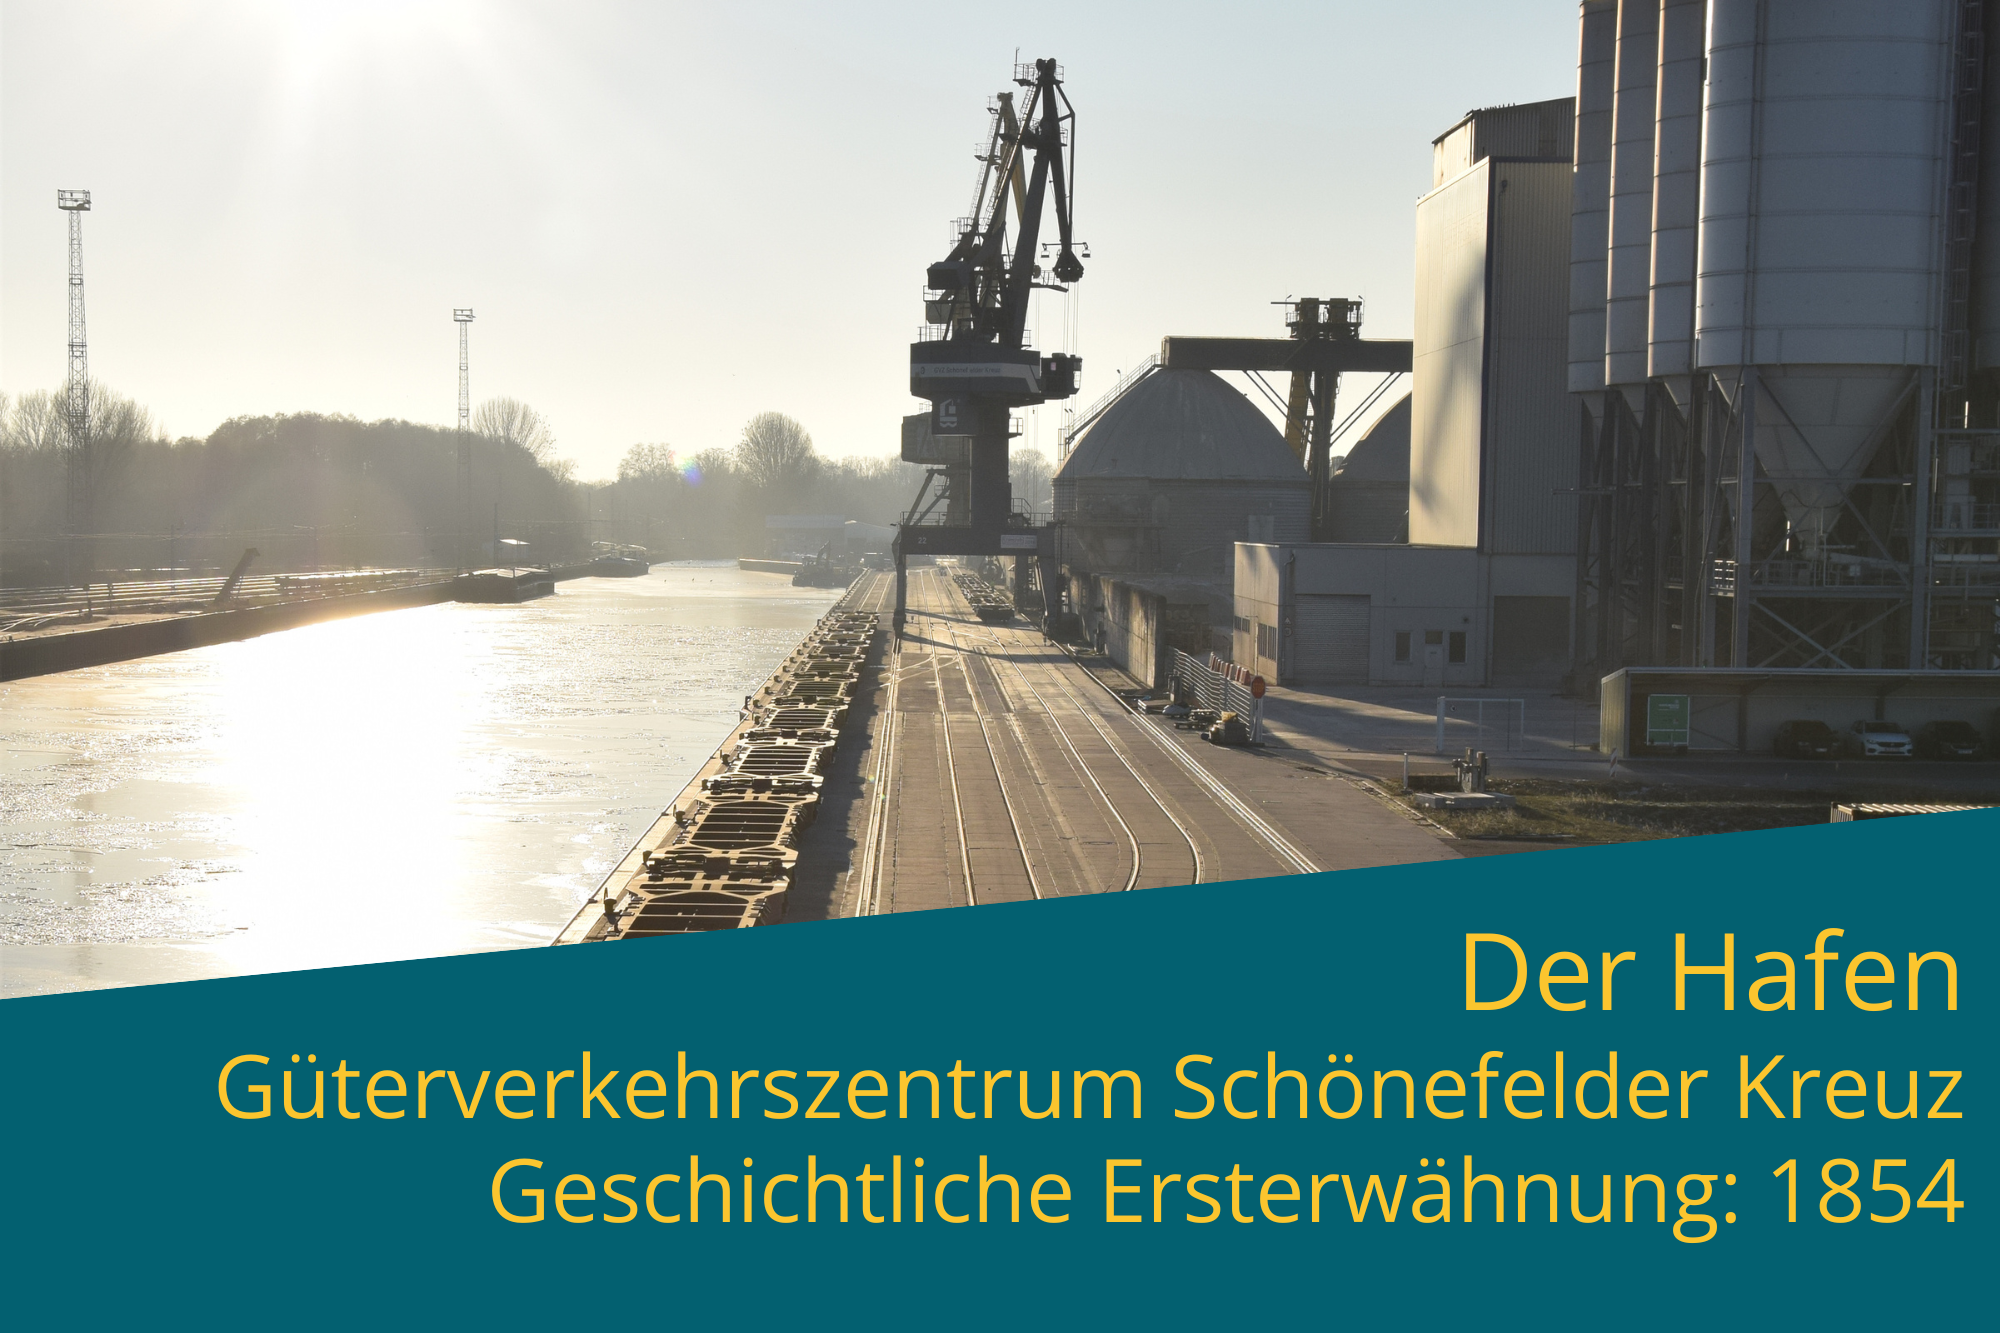 Der Hafen Güterverkehrszentrum Schönefelder Kreuz Geschichtliche Ersterwähnung: 1854 